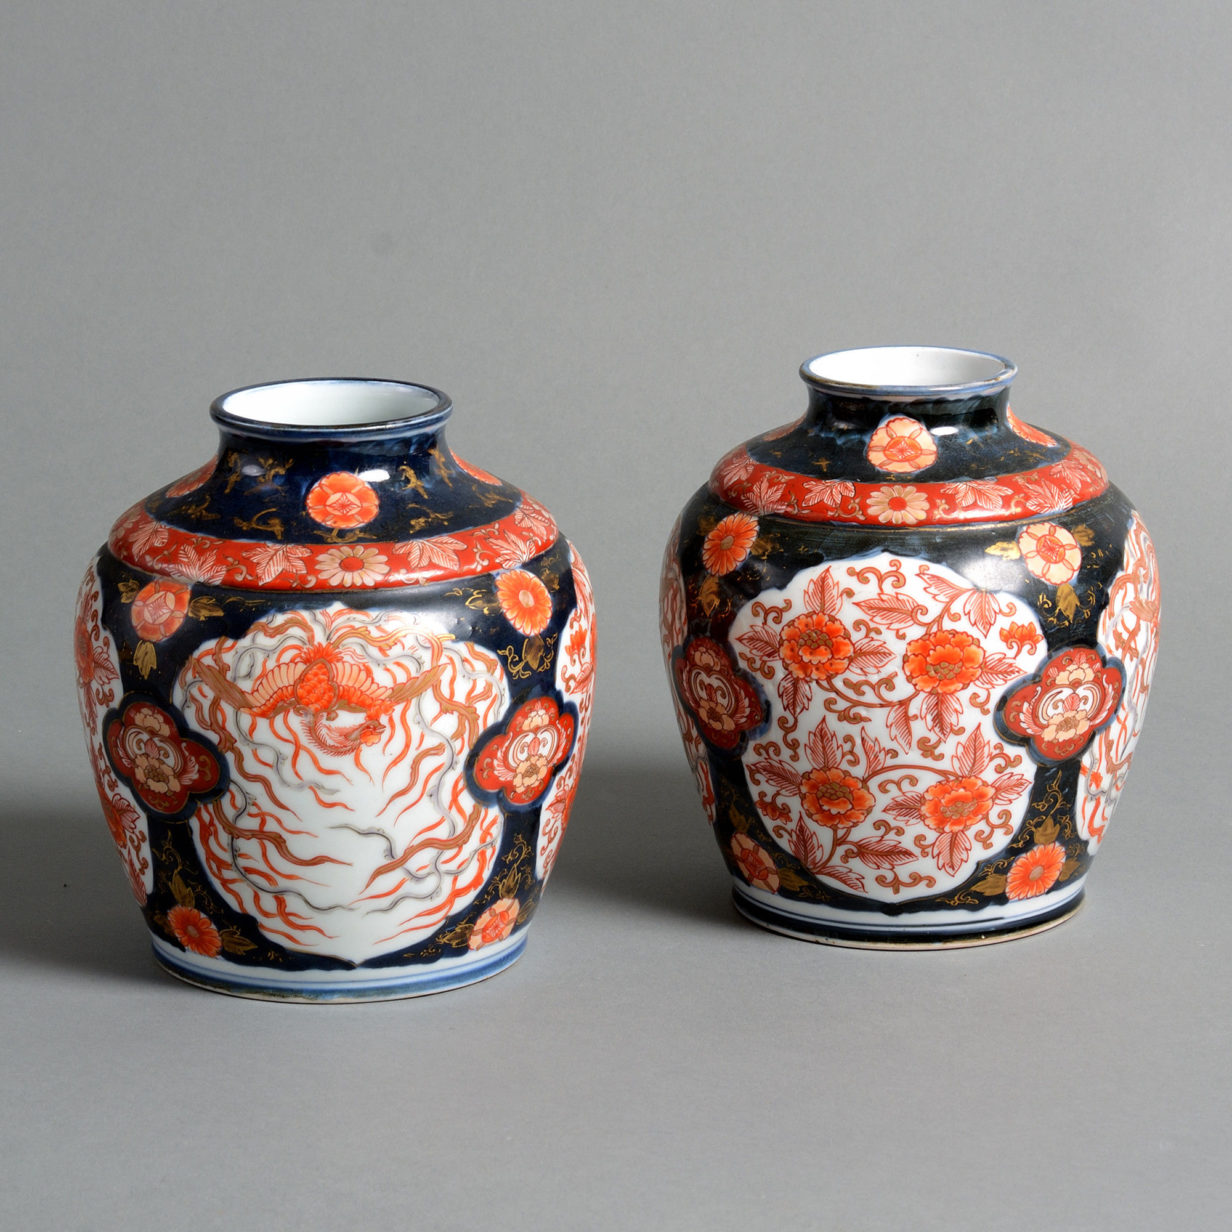 A 19th century pair of imari jars